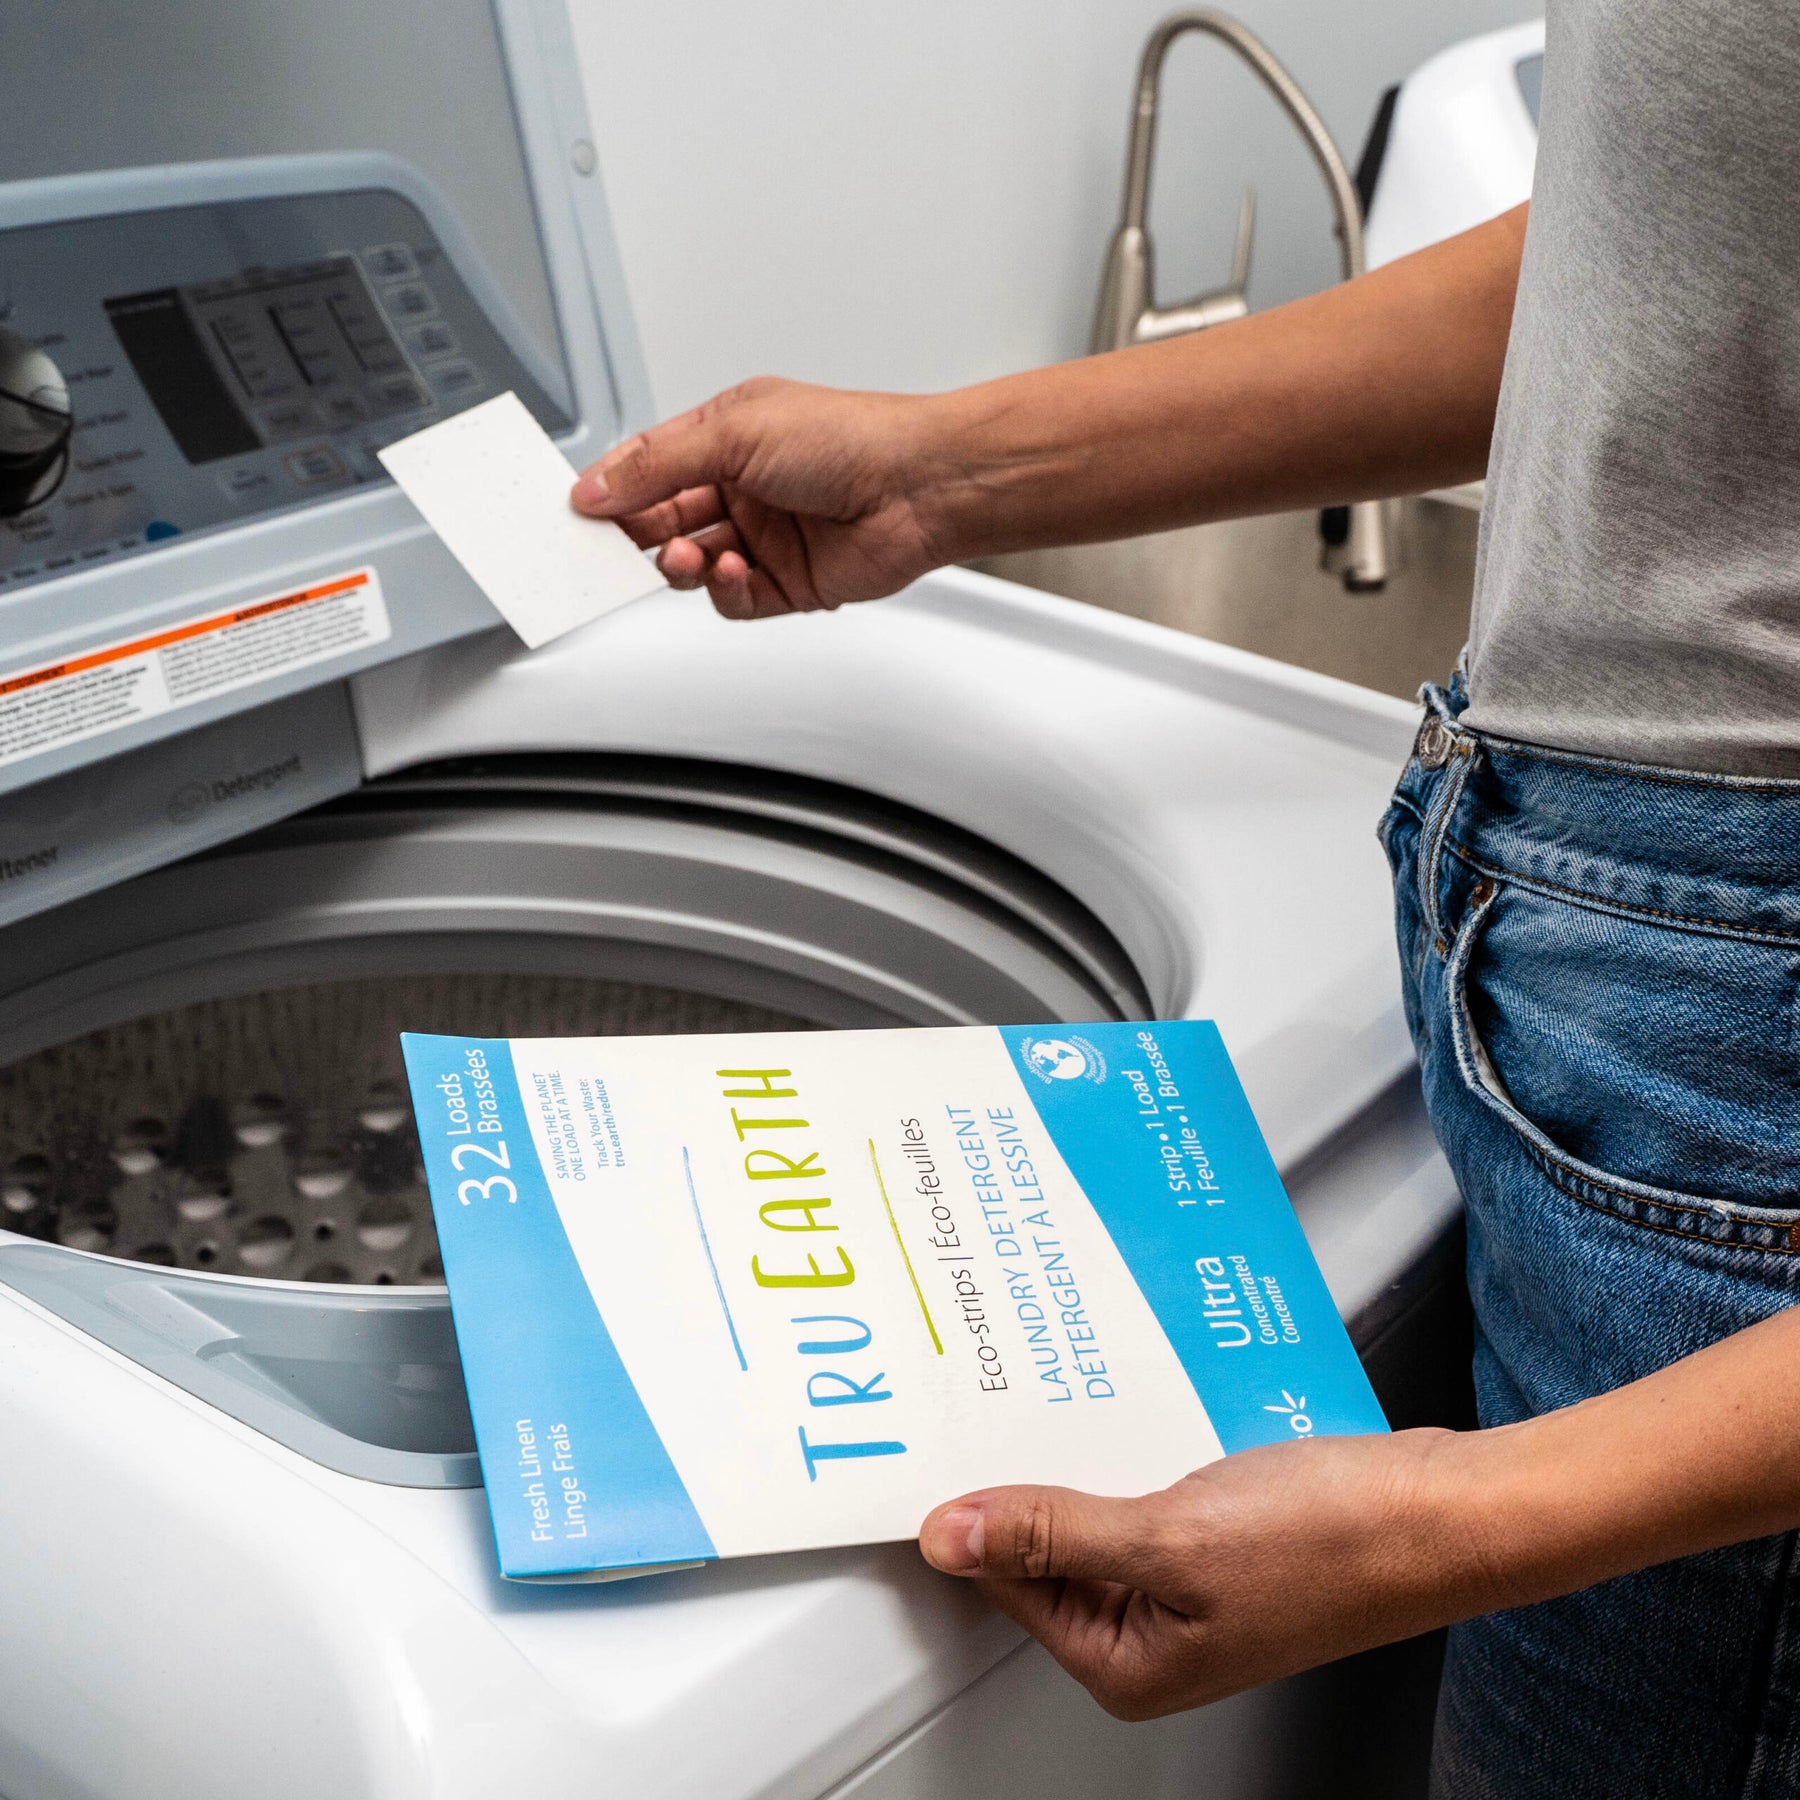 Tru Earth Laundry Detergent Strips Fresh Linen - 64 Loads